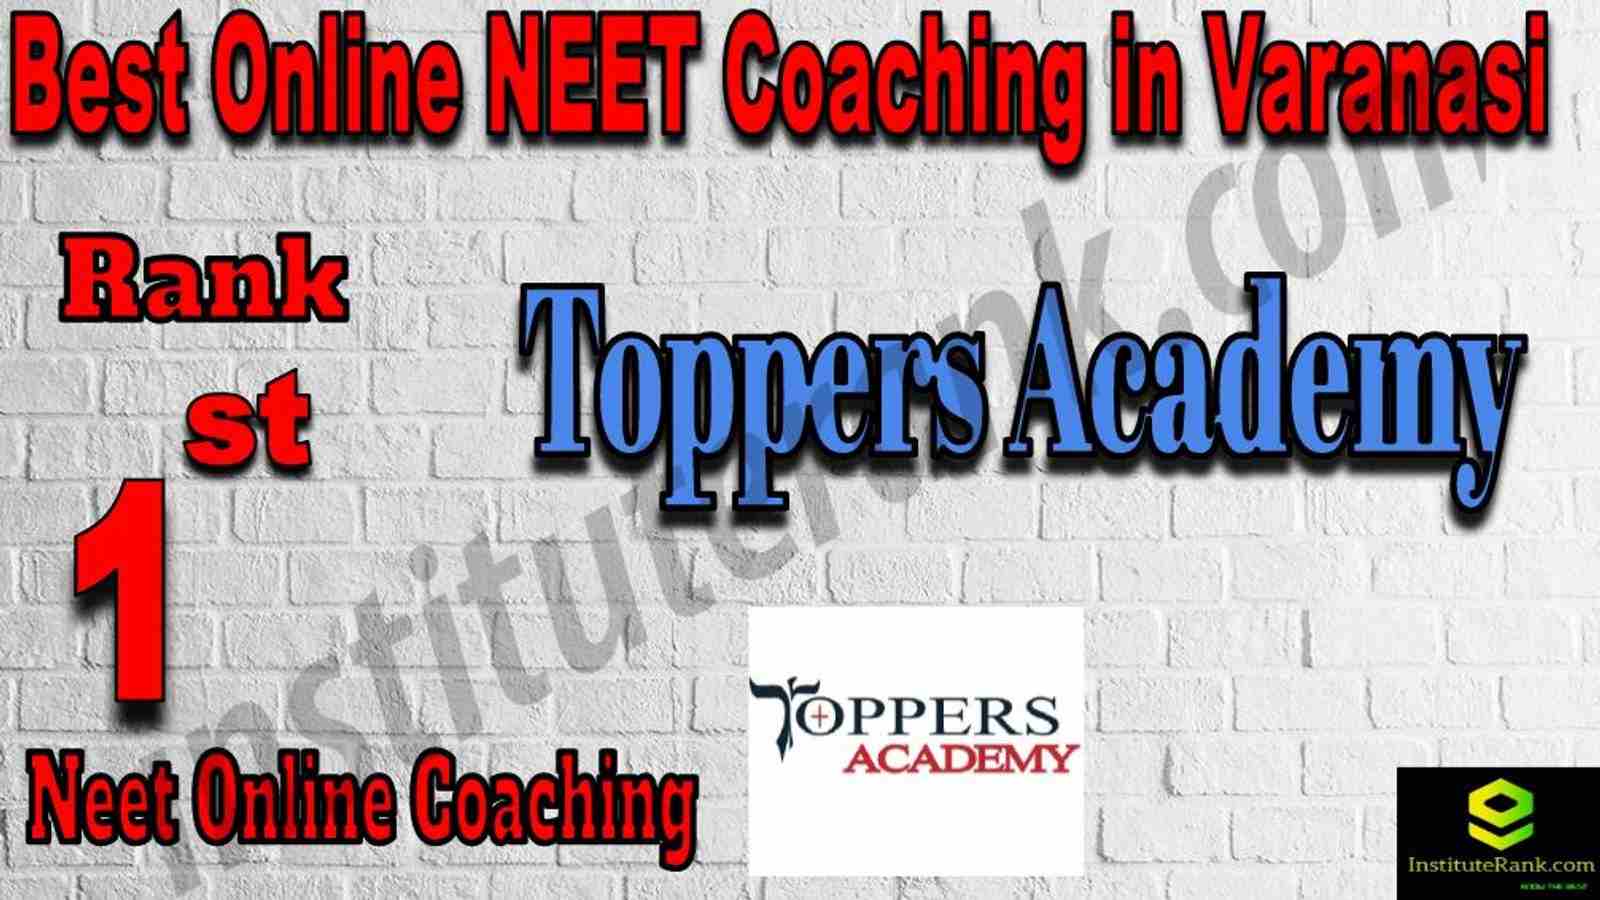 1st Best Online Neet Coaching in Varanasi